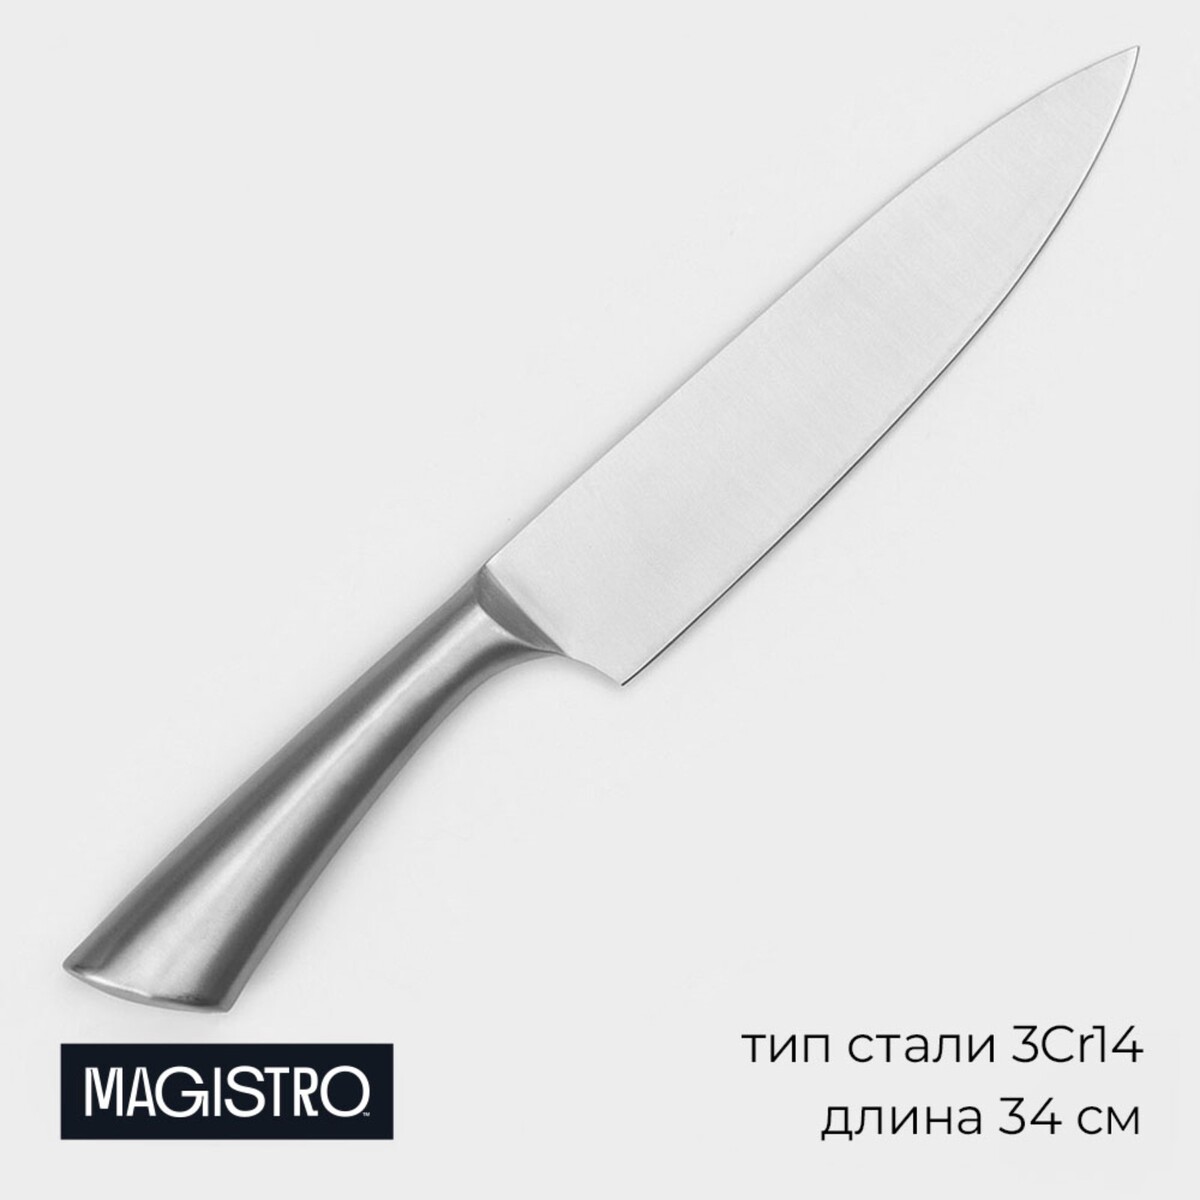 Нож - шеф magistro ardone, лезвие 20 см, цвет серебристый